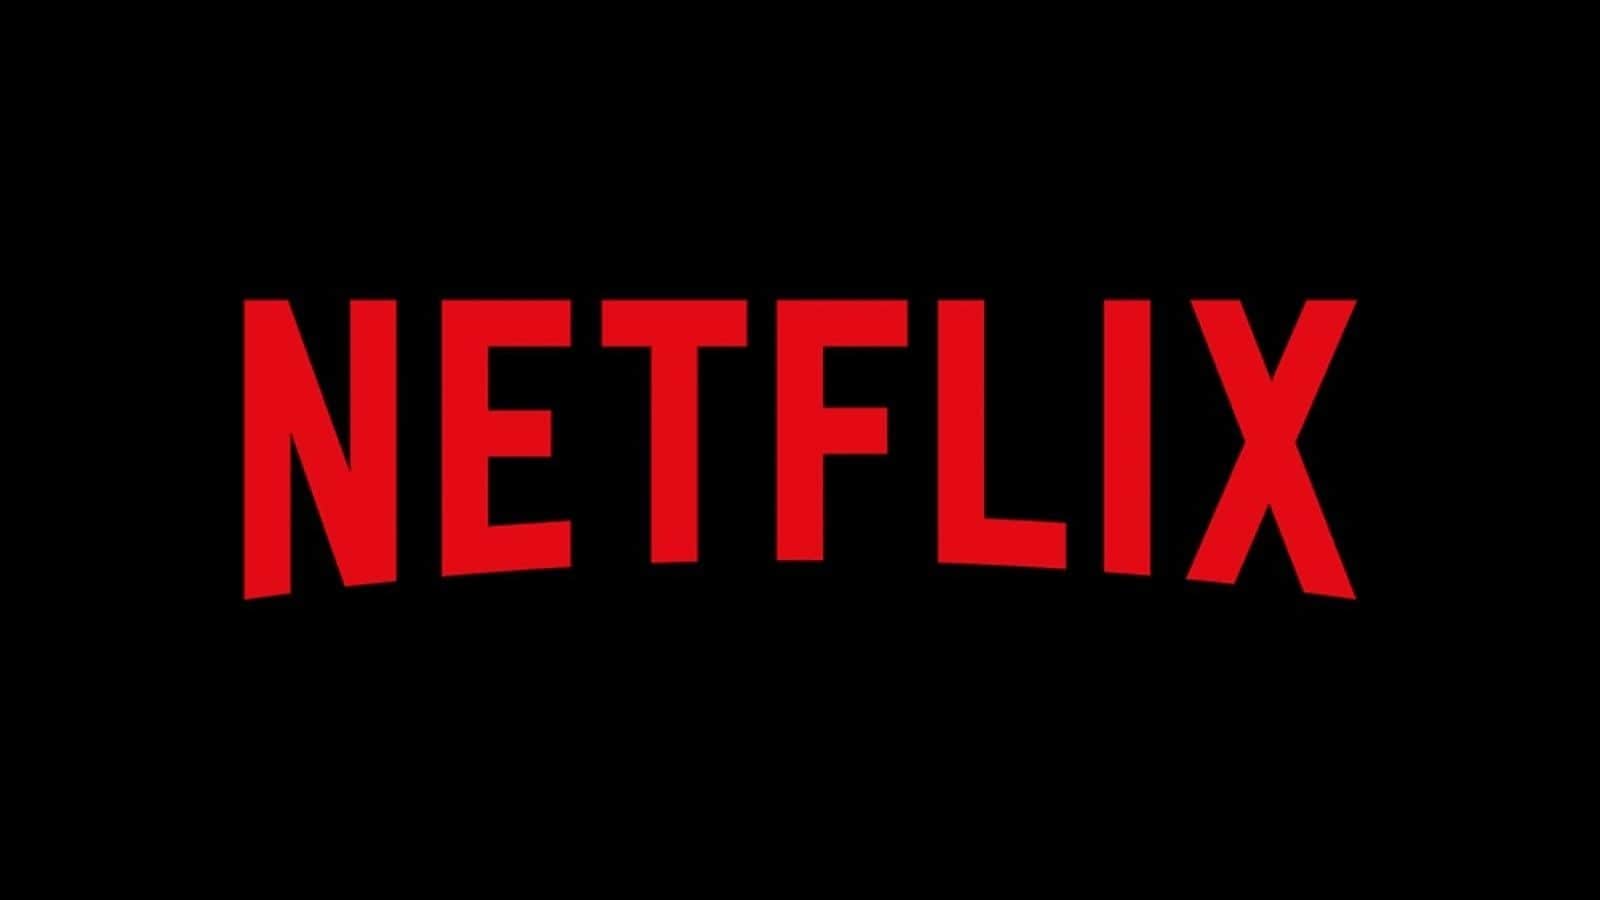 Netflix-এর নজরদারি! অন্যের সঙ্গে পাসওয়ার্ড শেয়ার করলেই দিতে হবে অতিরিক্ত টাকা